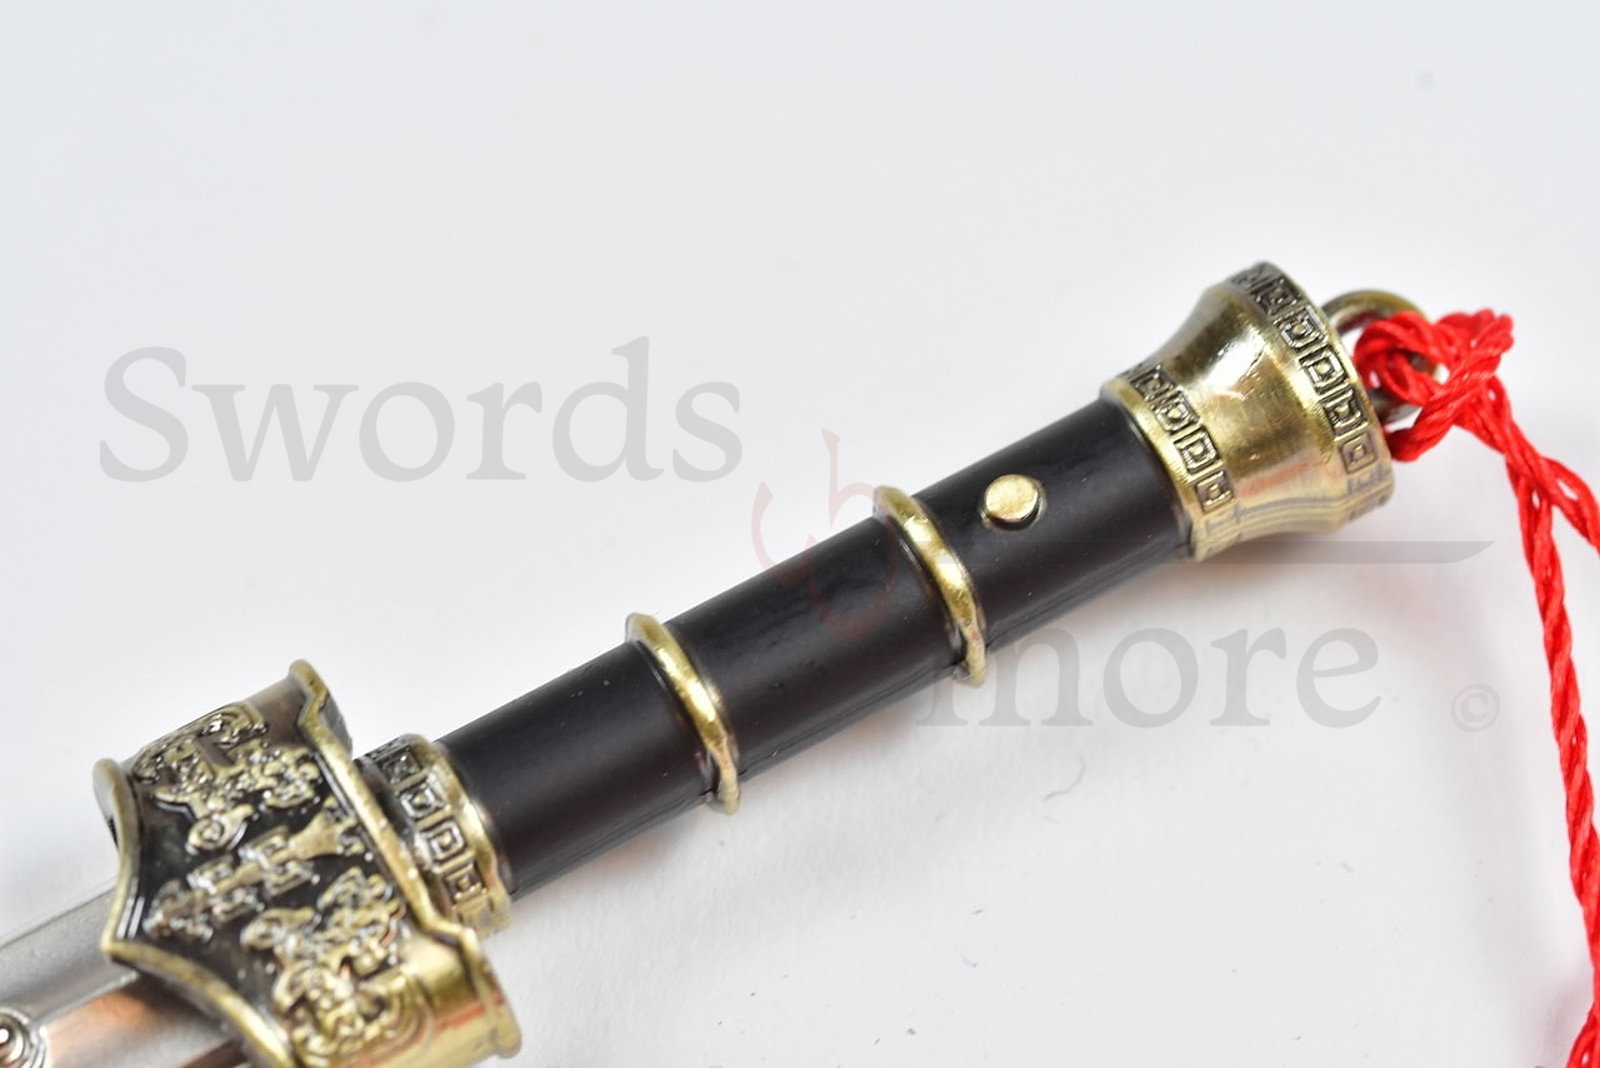 Schwert von Goujian – Jian Schwert, Brieföffner mit Scheide und Ständer